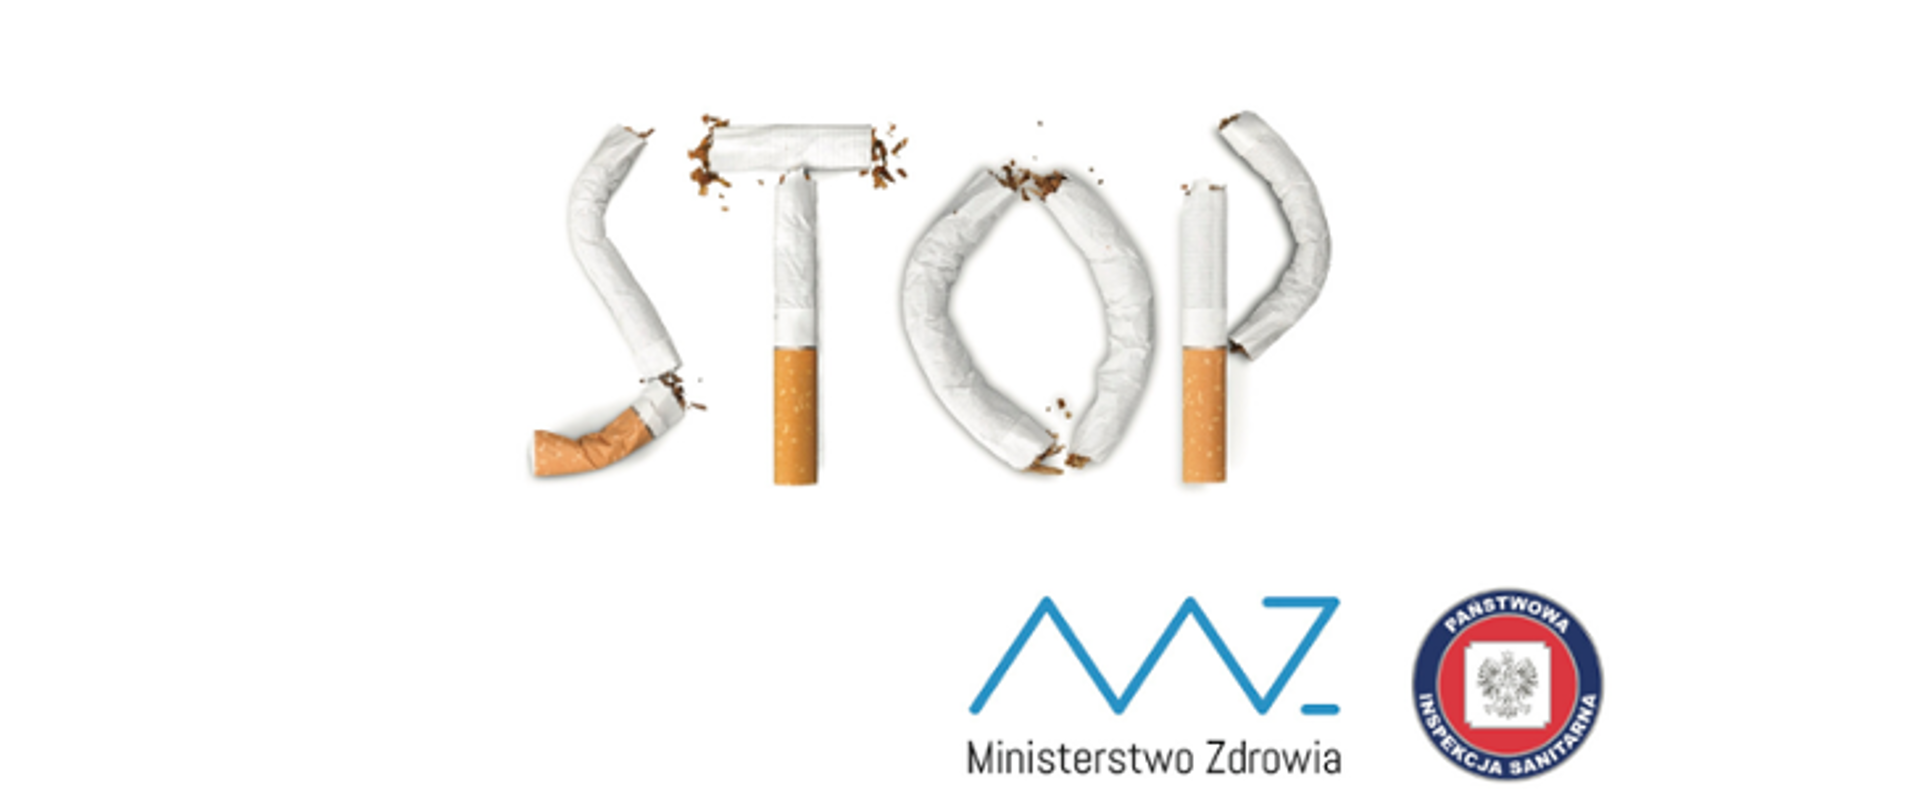 napis STOP ułożony z papierosów, w prawym dolnym rogu logo Państwowej Inspekcji Sanitarnej oraz logo Ministrstwa Zdrowia